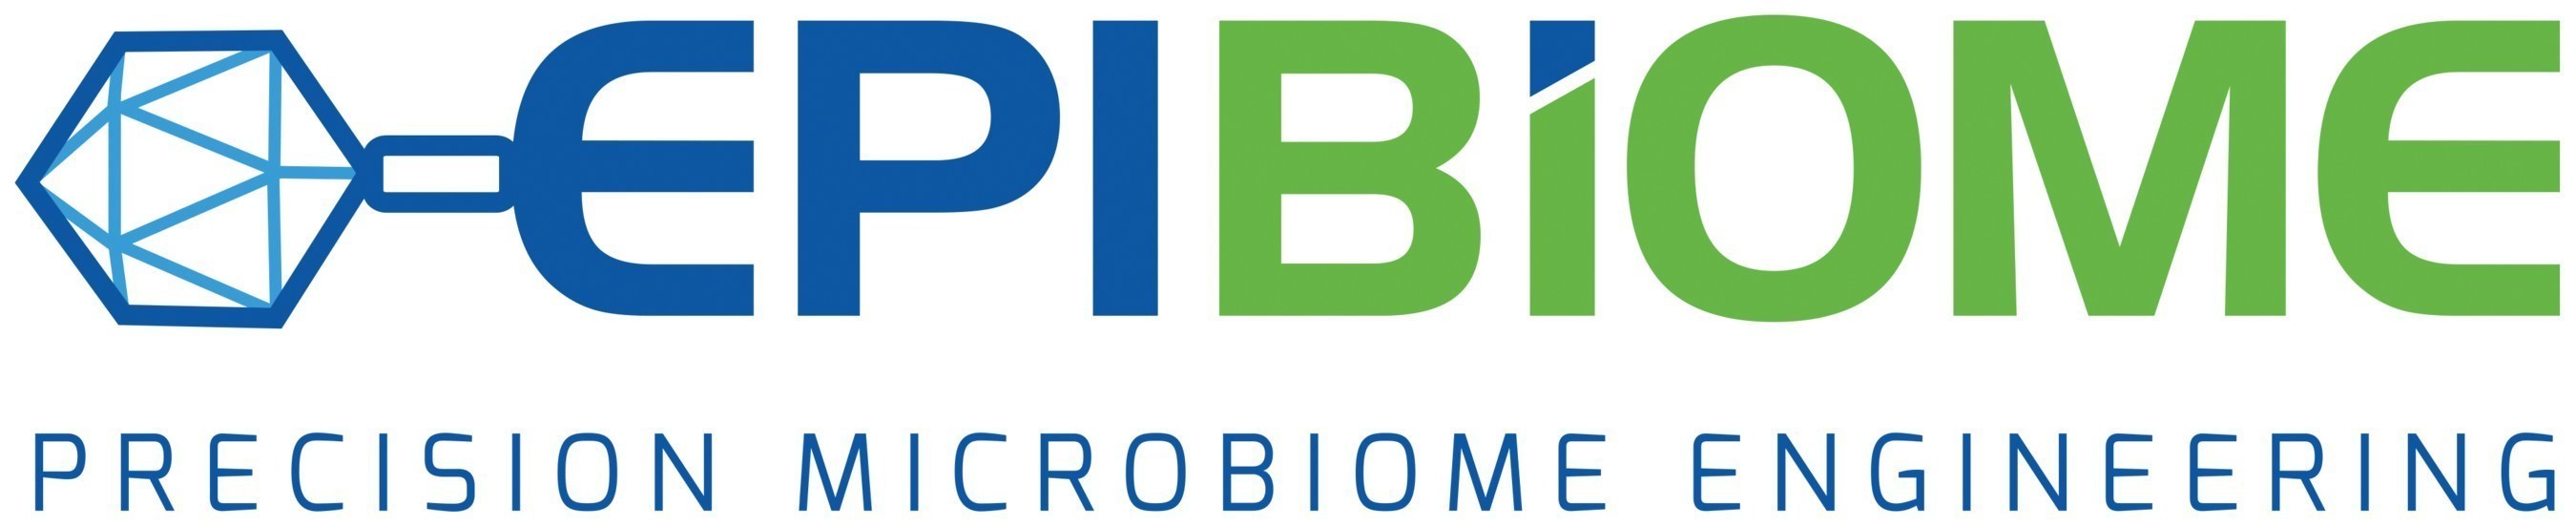 EpiBiome logo (PRNewsFoto/EpiBiome)